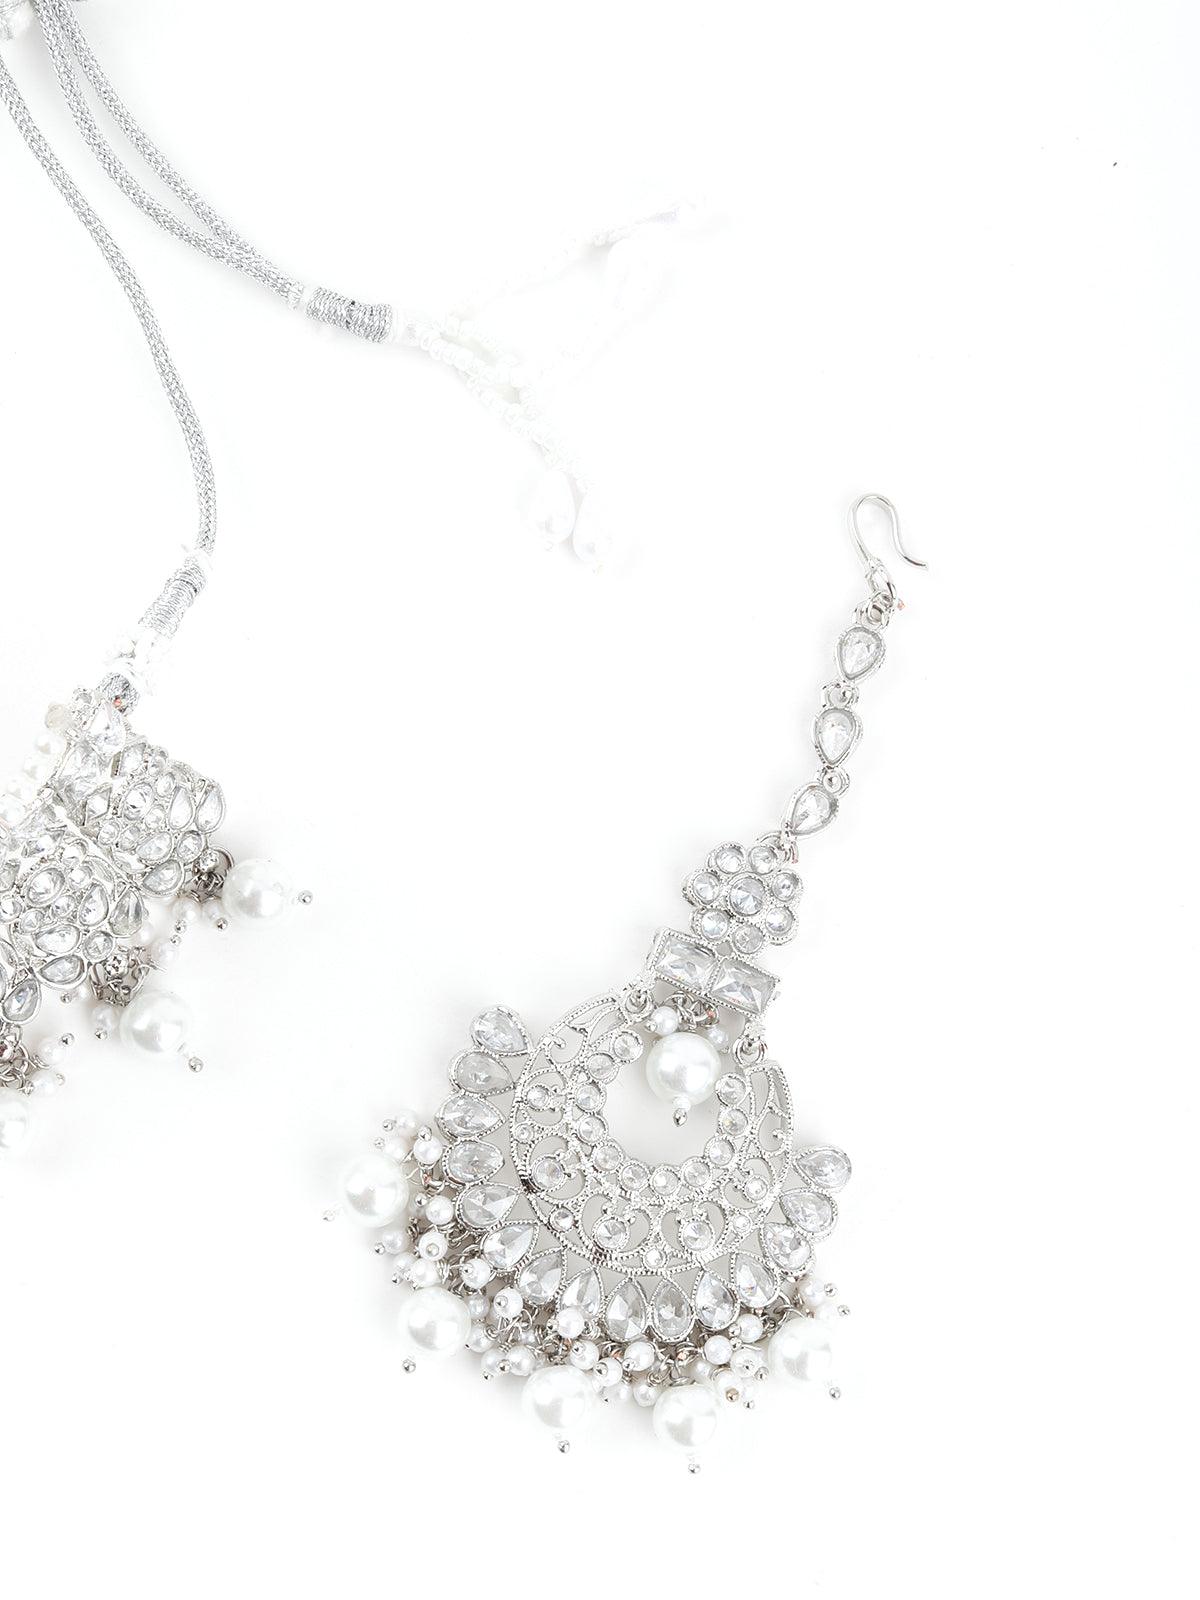 Ethnic Silver Crystal Embellished Choker Necklace Set - Odette